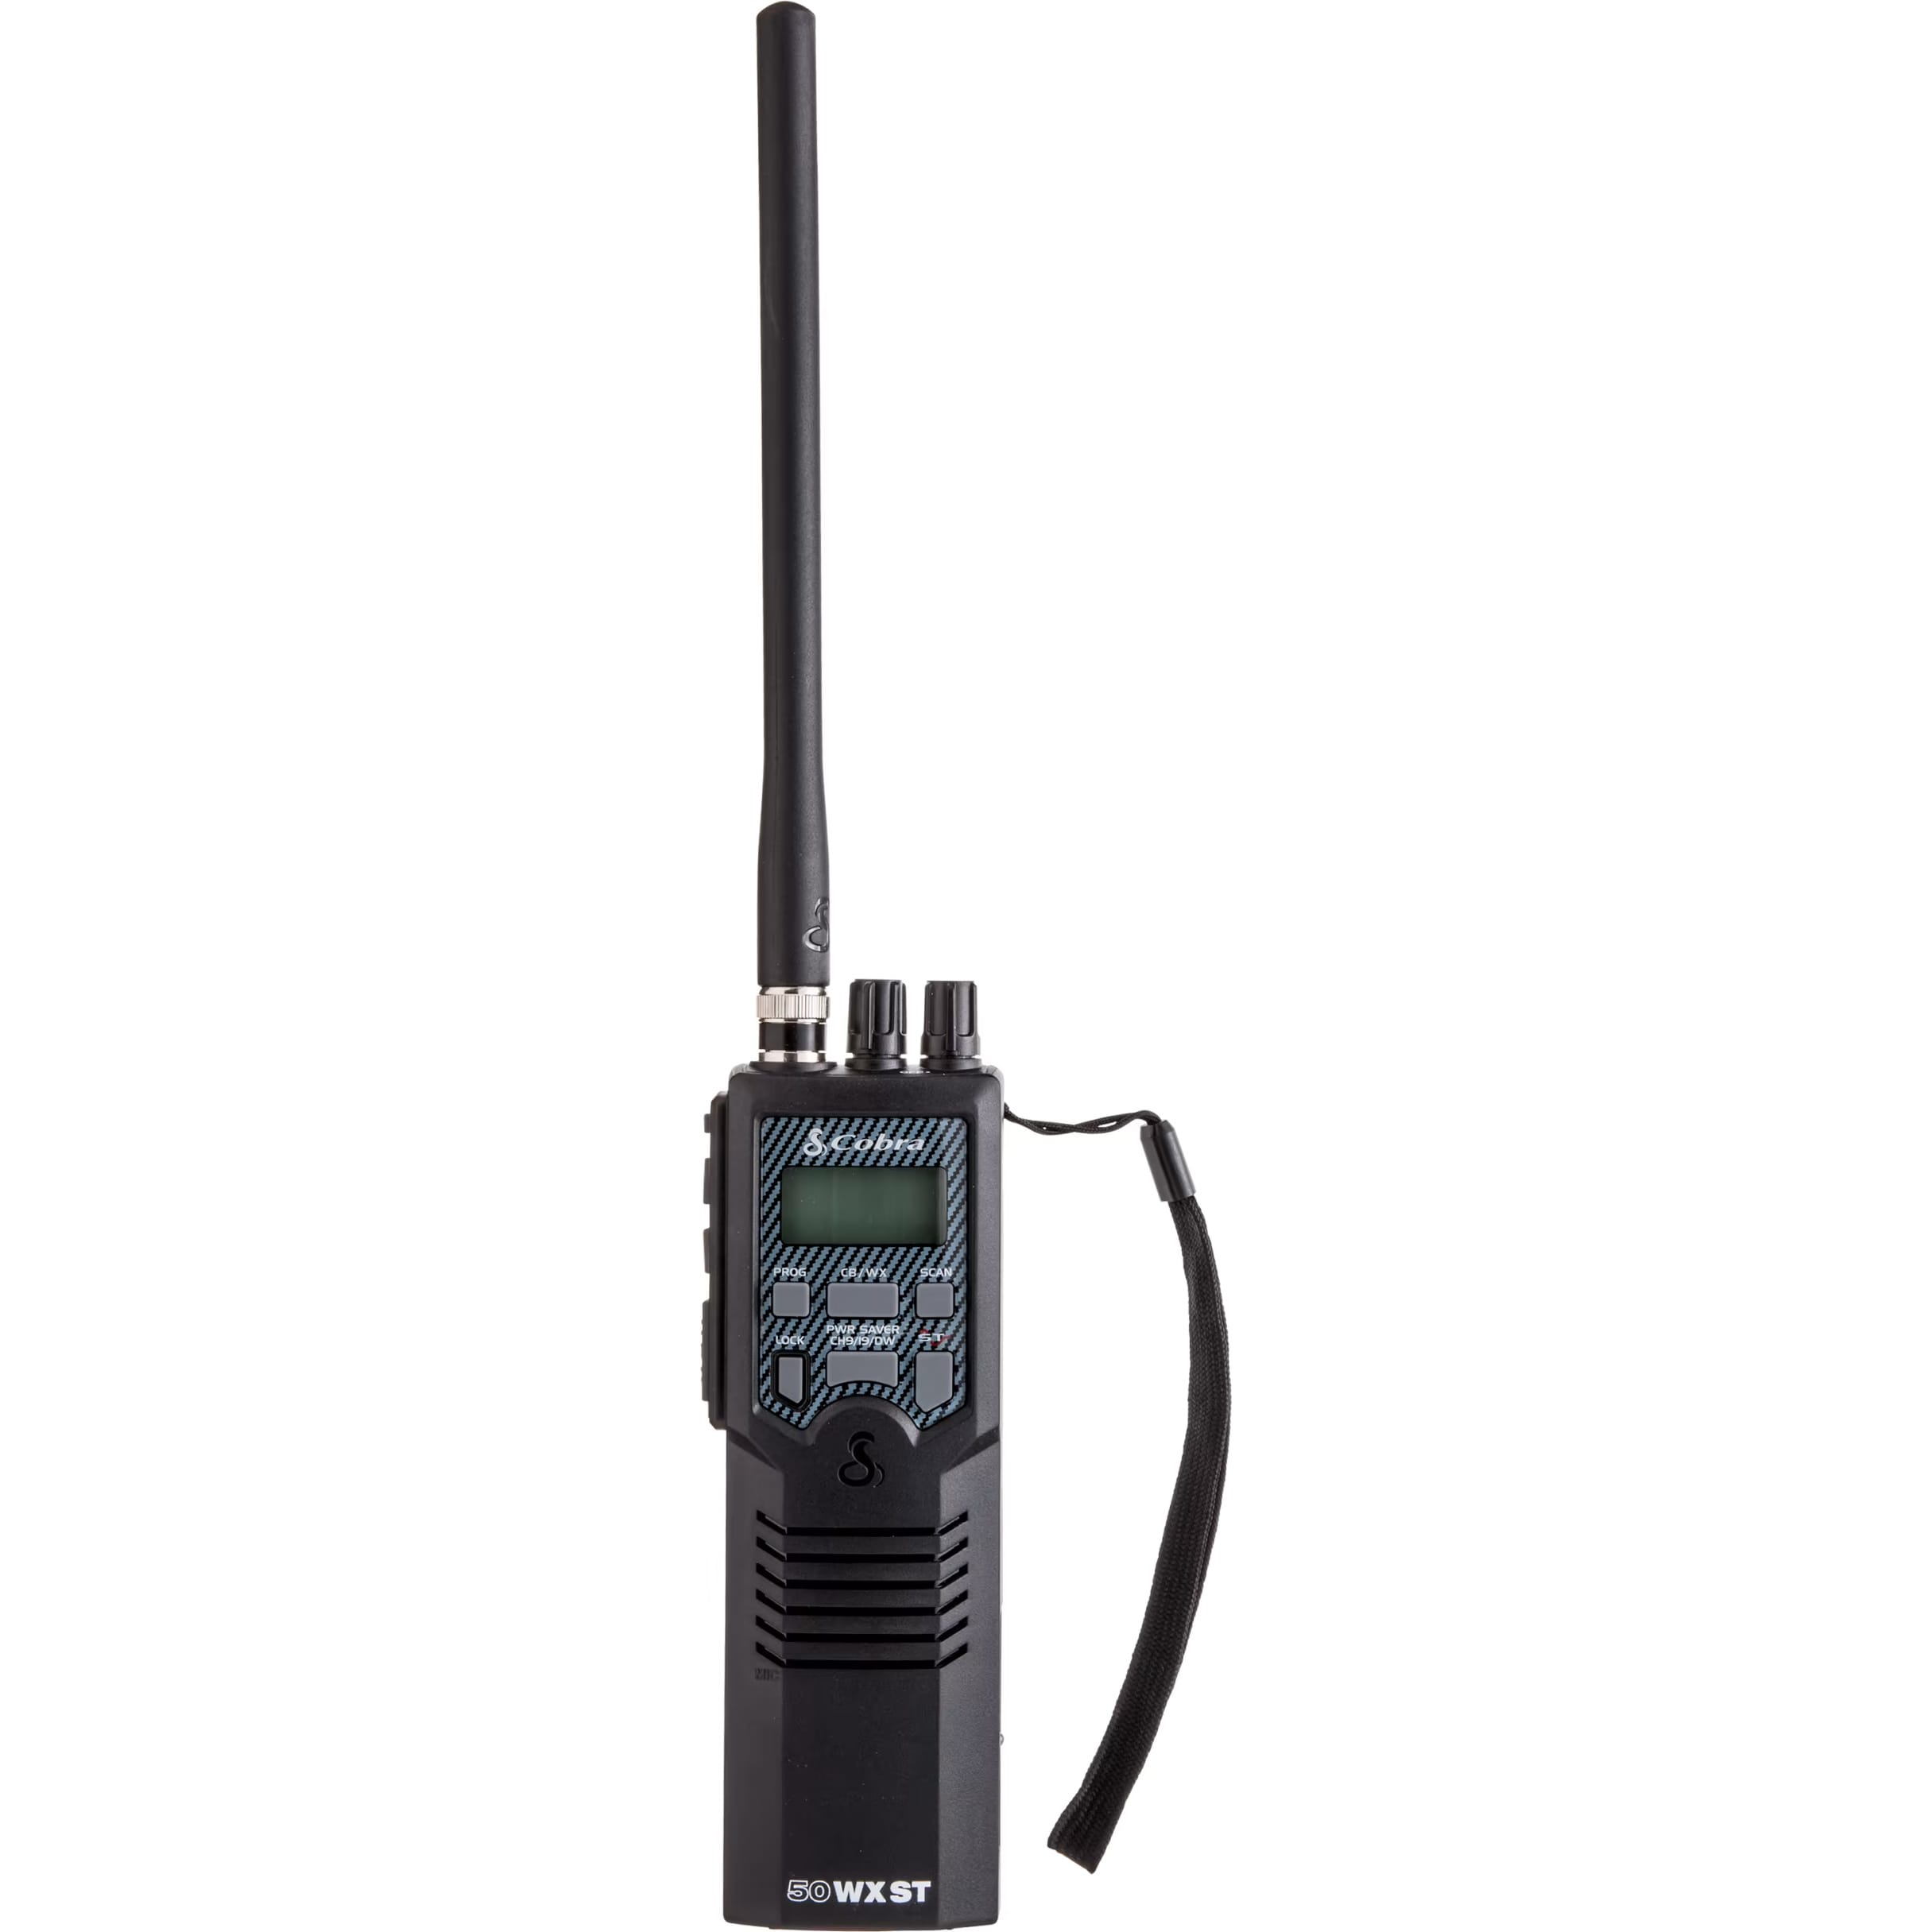 Cobra® HH 50 WX ST Handheld 2-Way CB Radio